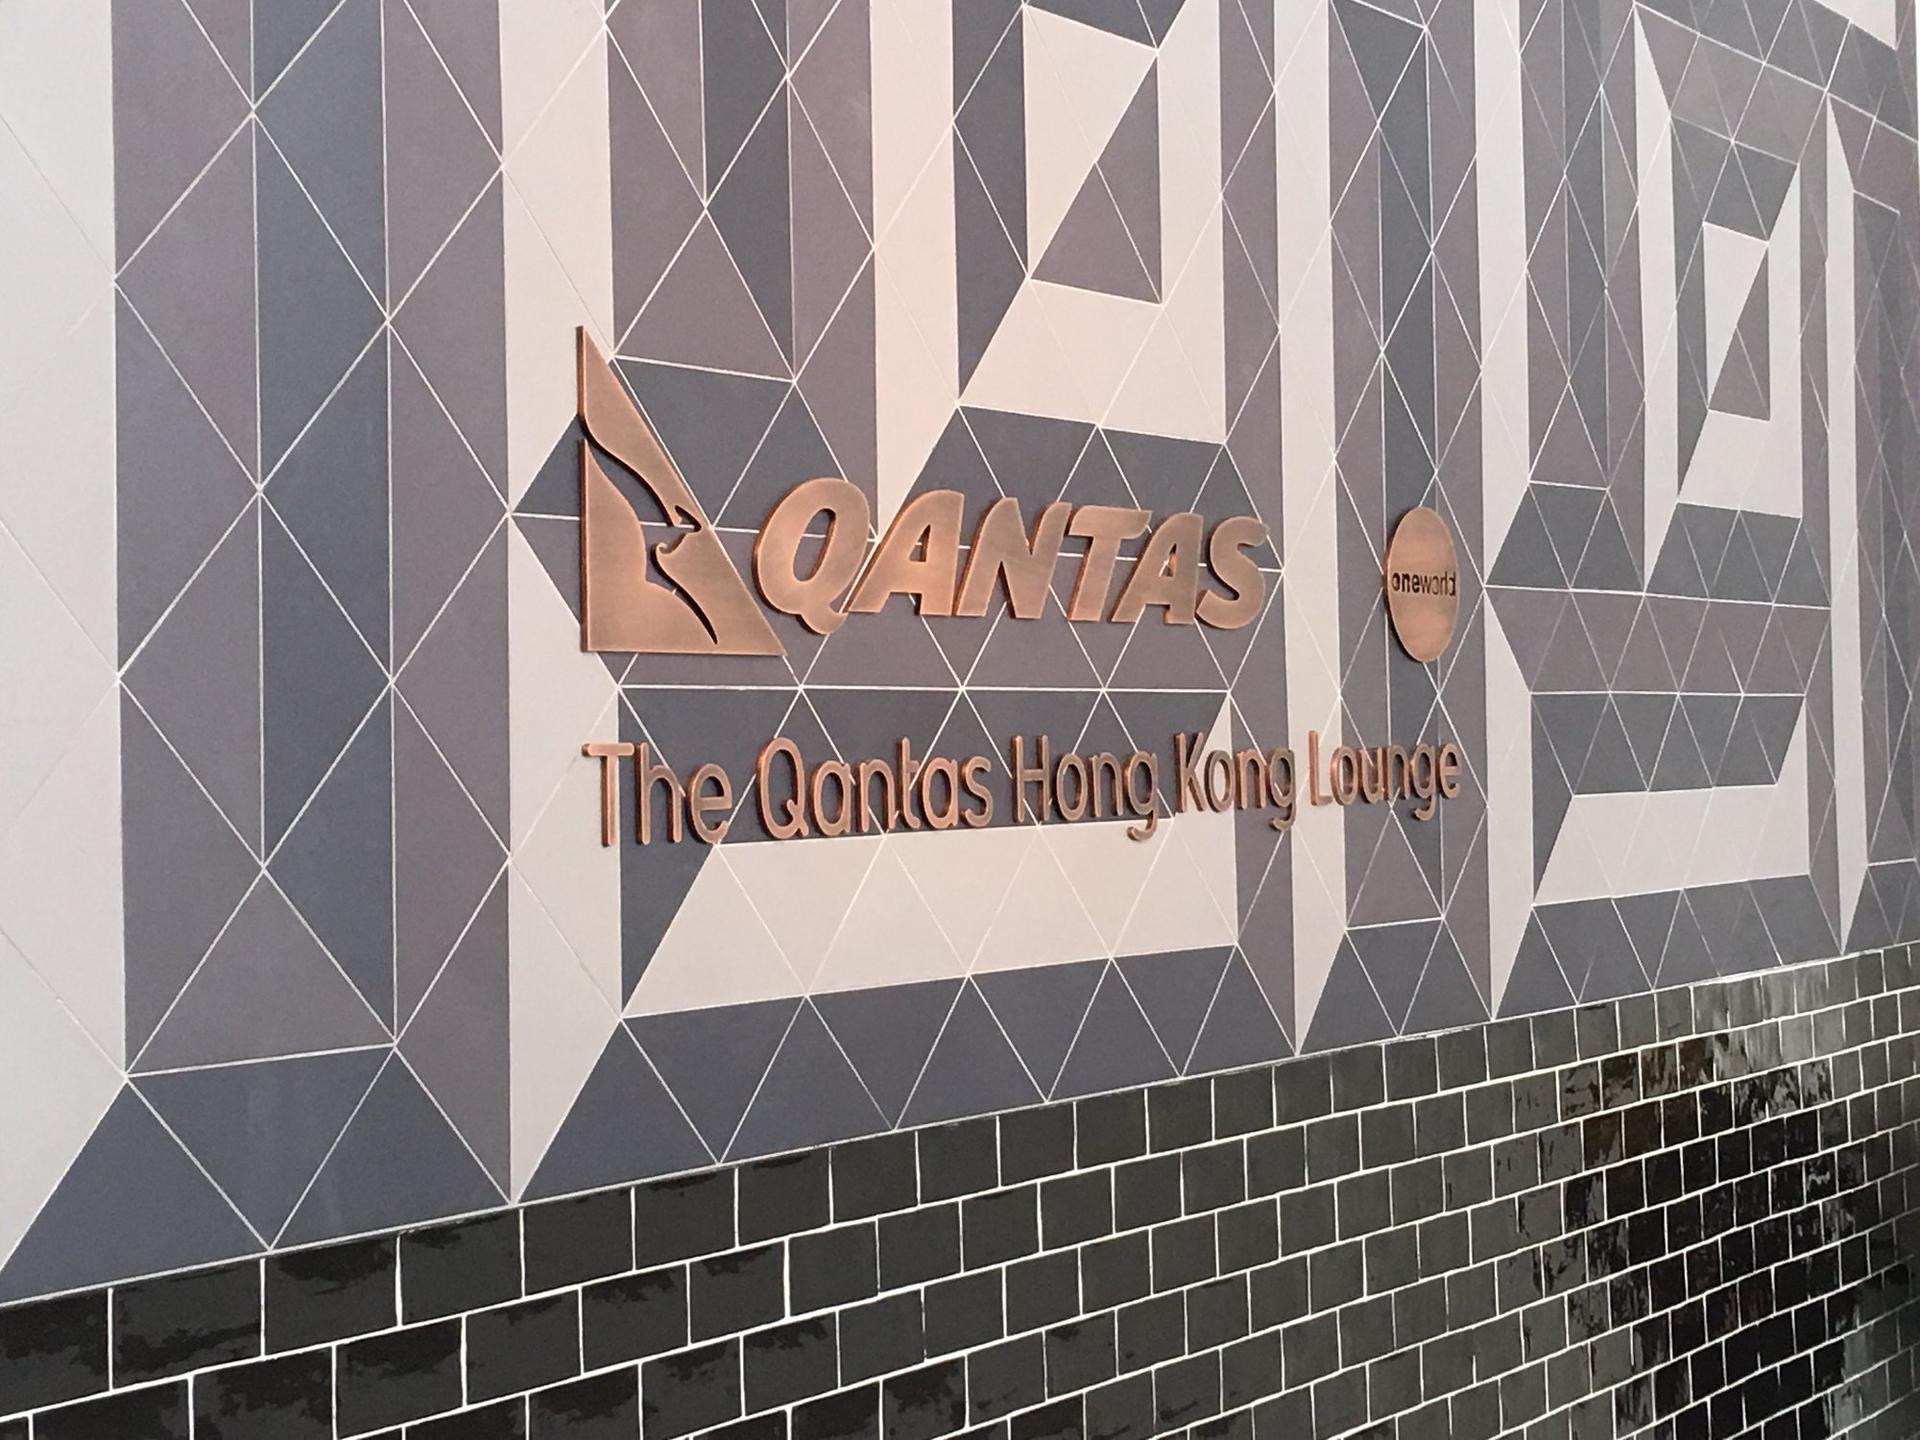 The Qantas Hong Kong Lounge image 76 of 99